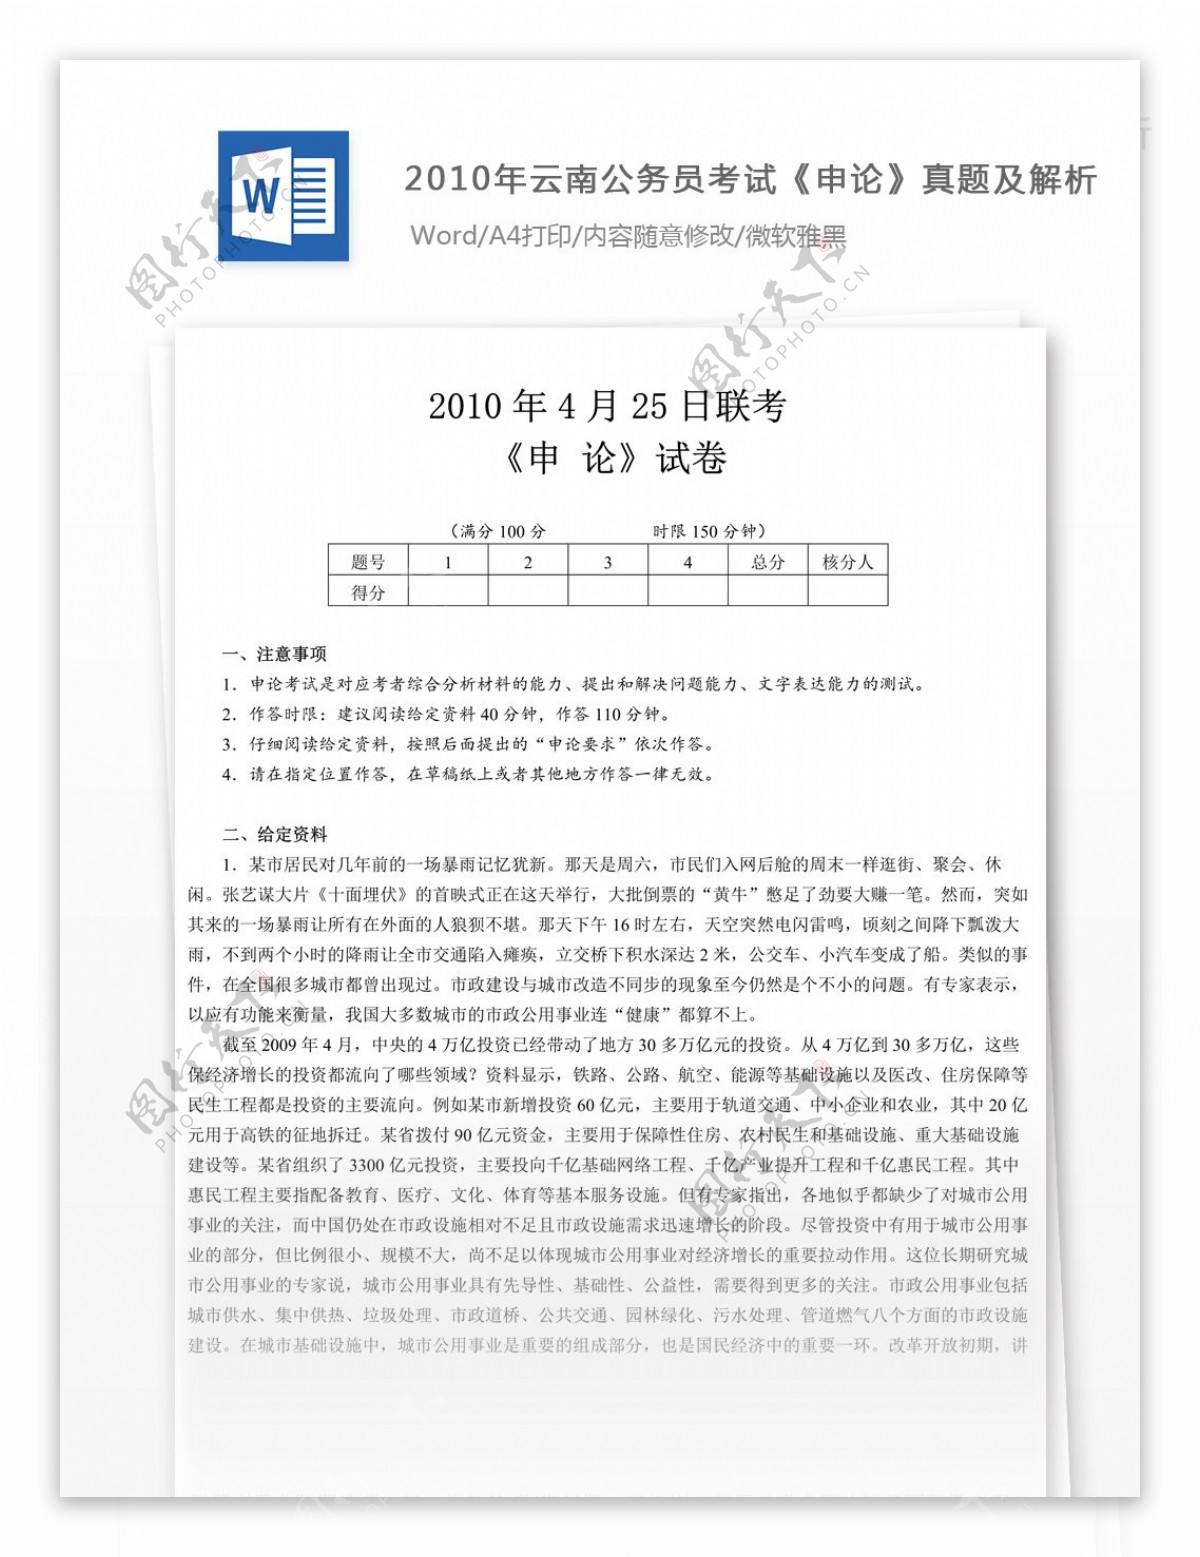 2010年云南公务员考试申论真题文库题库